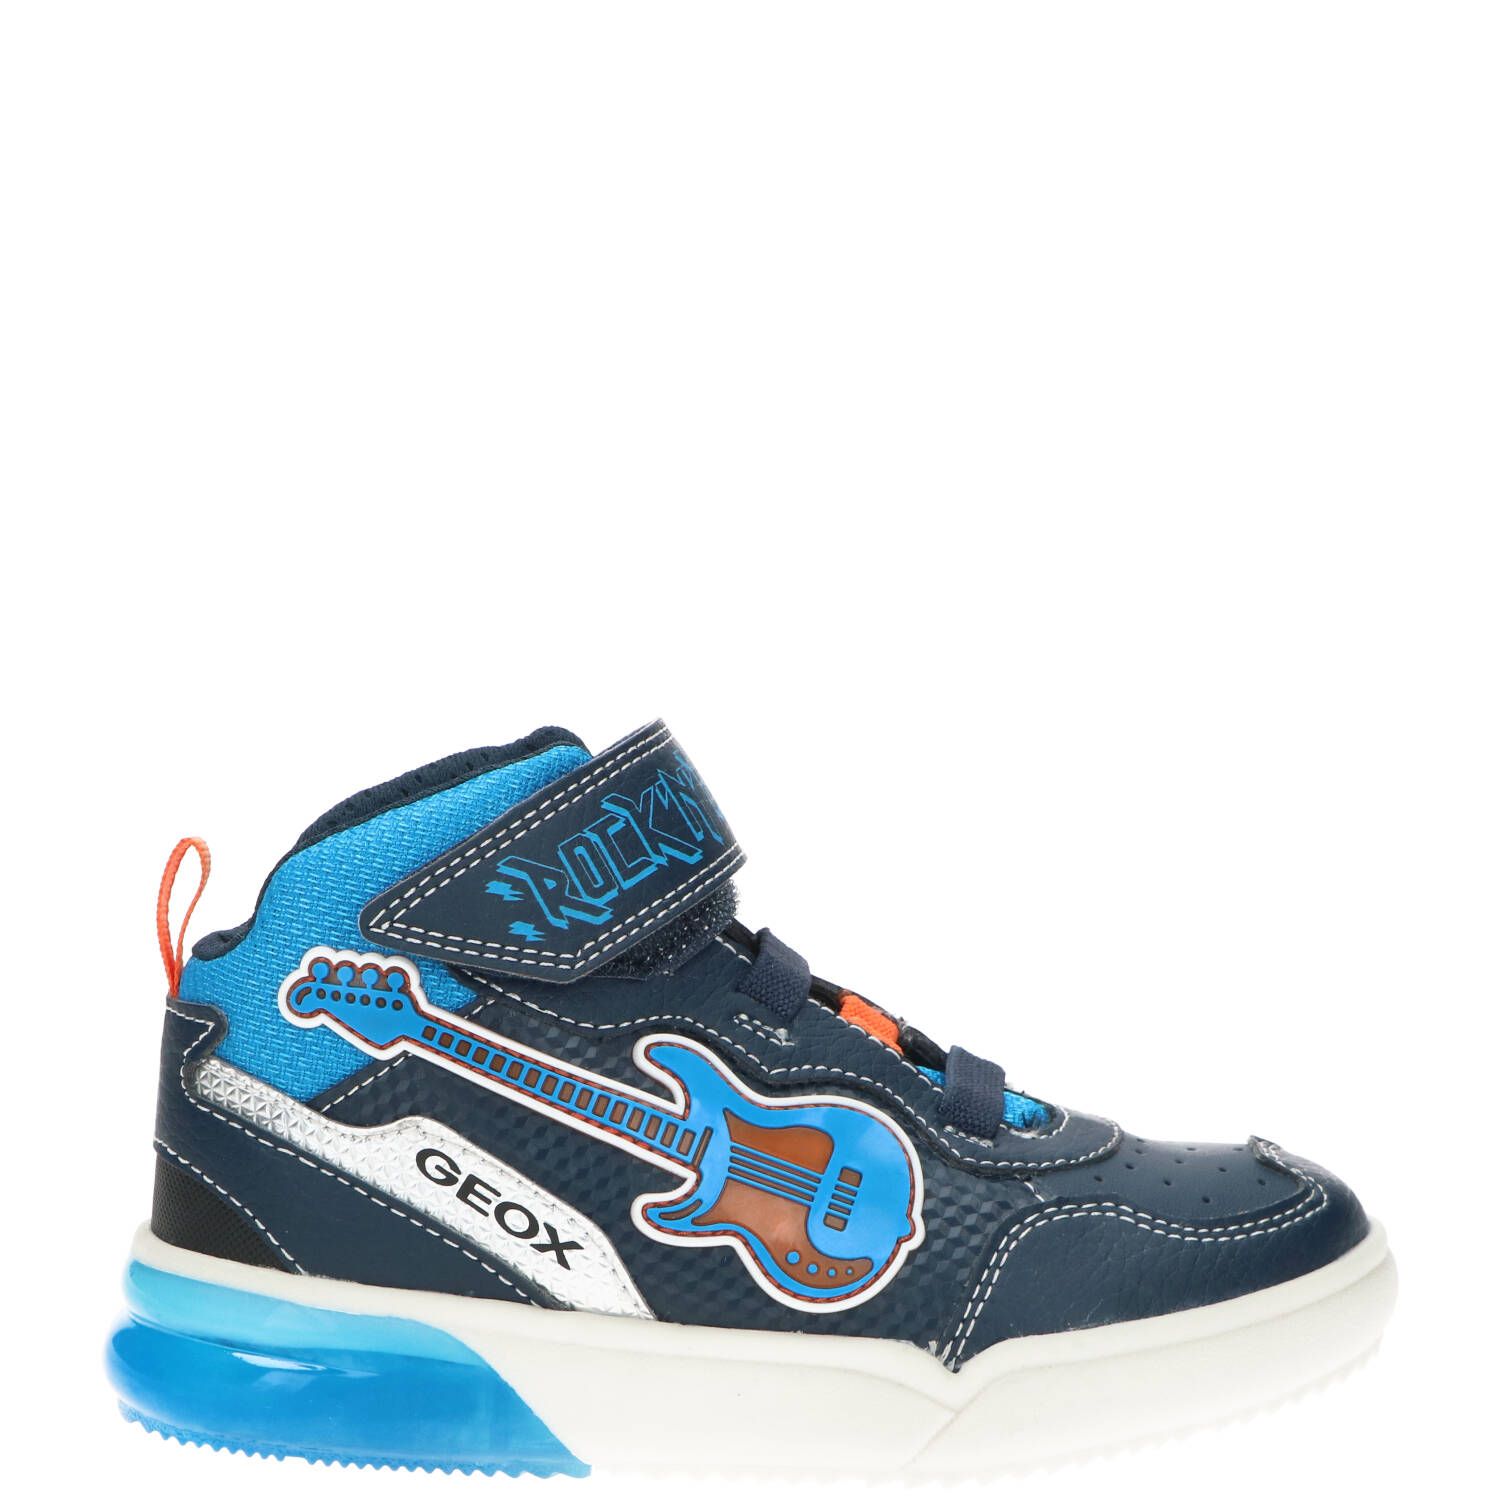 Geox Jongensboot, Lage schoenen, Jongen, Maat 31, blauw